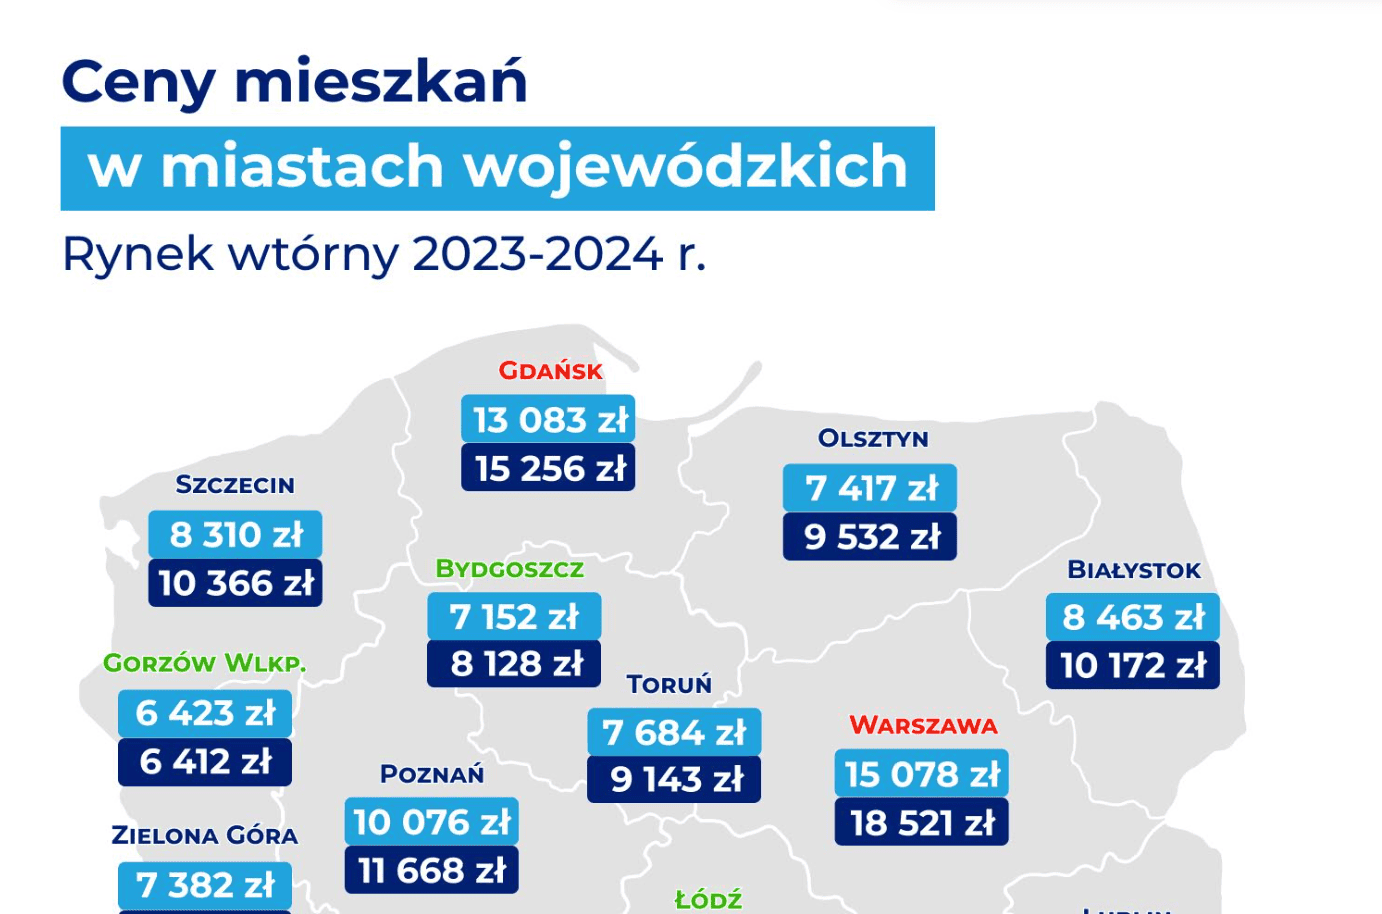 Ceny nieruchomości w Polsce wciąż rosną. Mieszkania w Warszawie najdroższe, w Gorzowie Wielkopolskim najtańsze